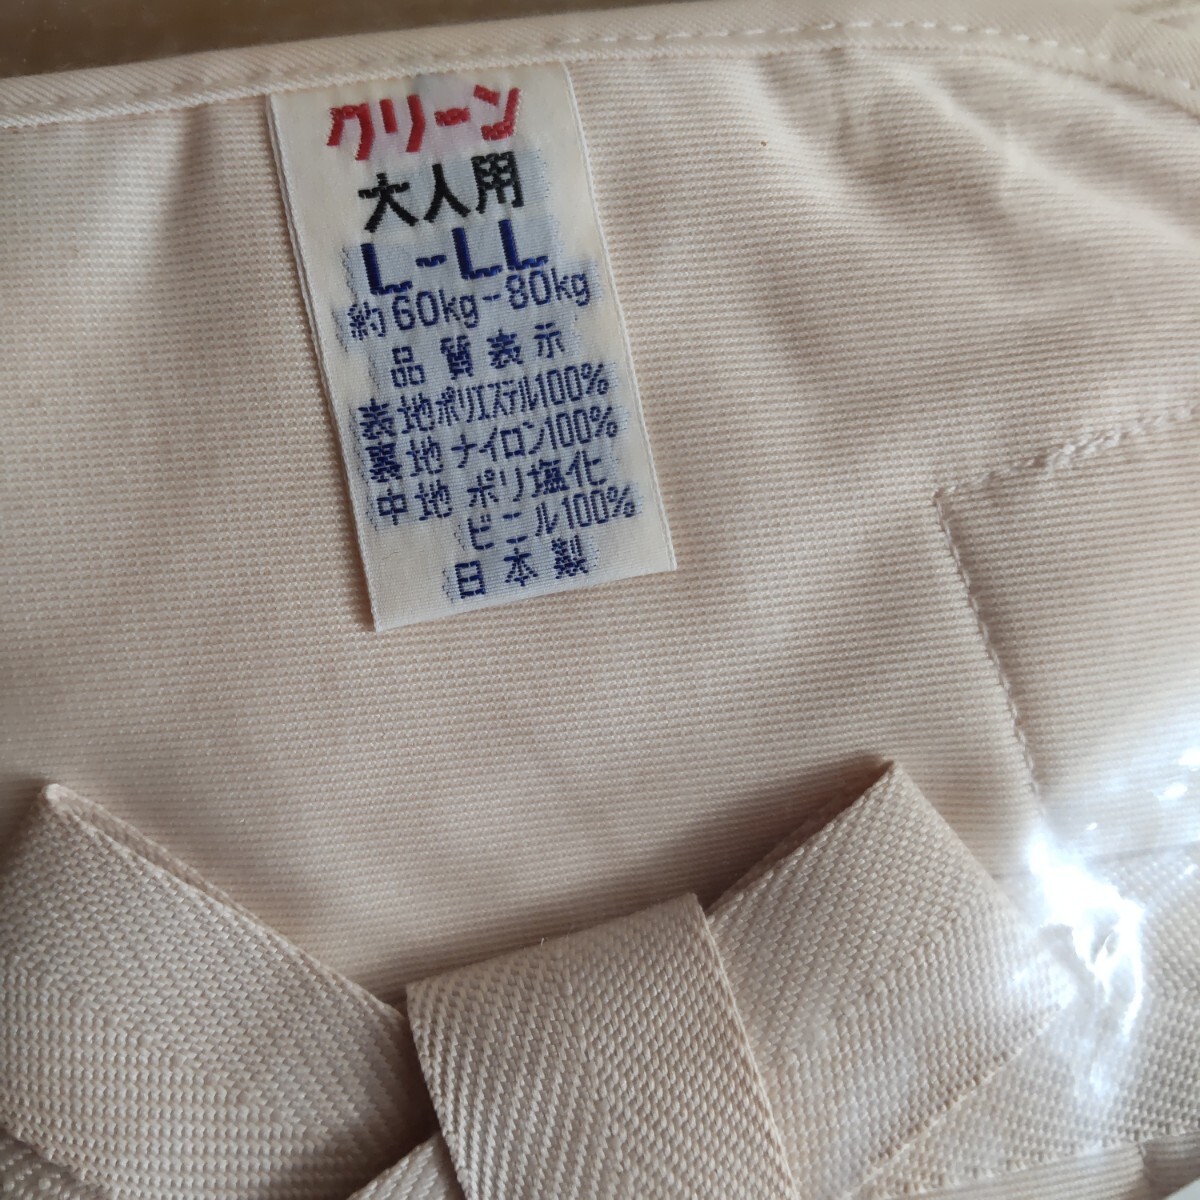 日本製 未開封 おむつカバー L-ＬＬ サイズ 60kg〜80kg 昭和 レトロ 医療用 ナイロン の画像4